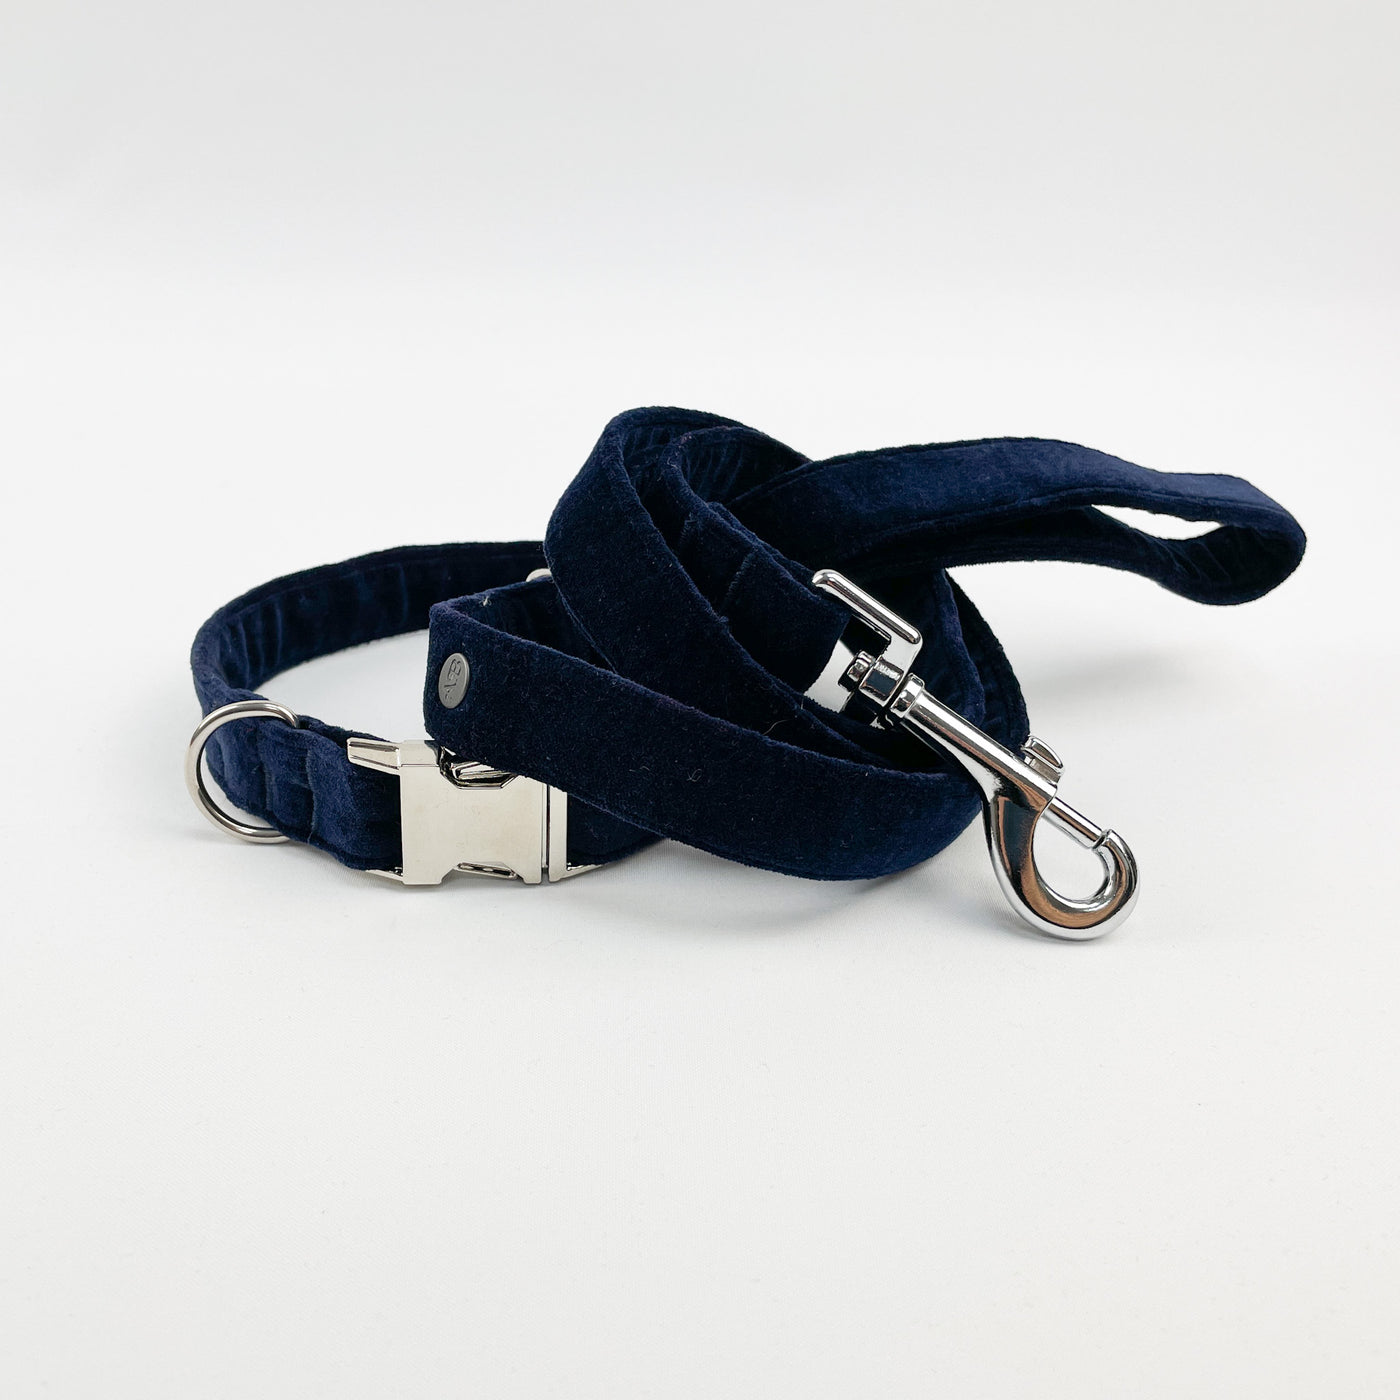 Navy velvet dog lead and collar